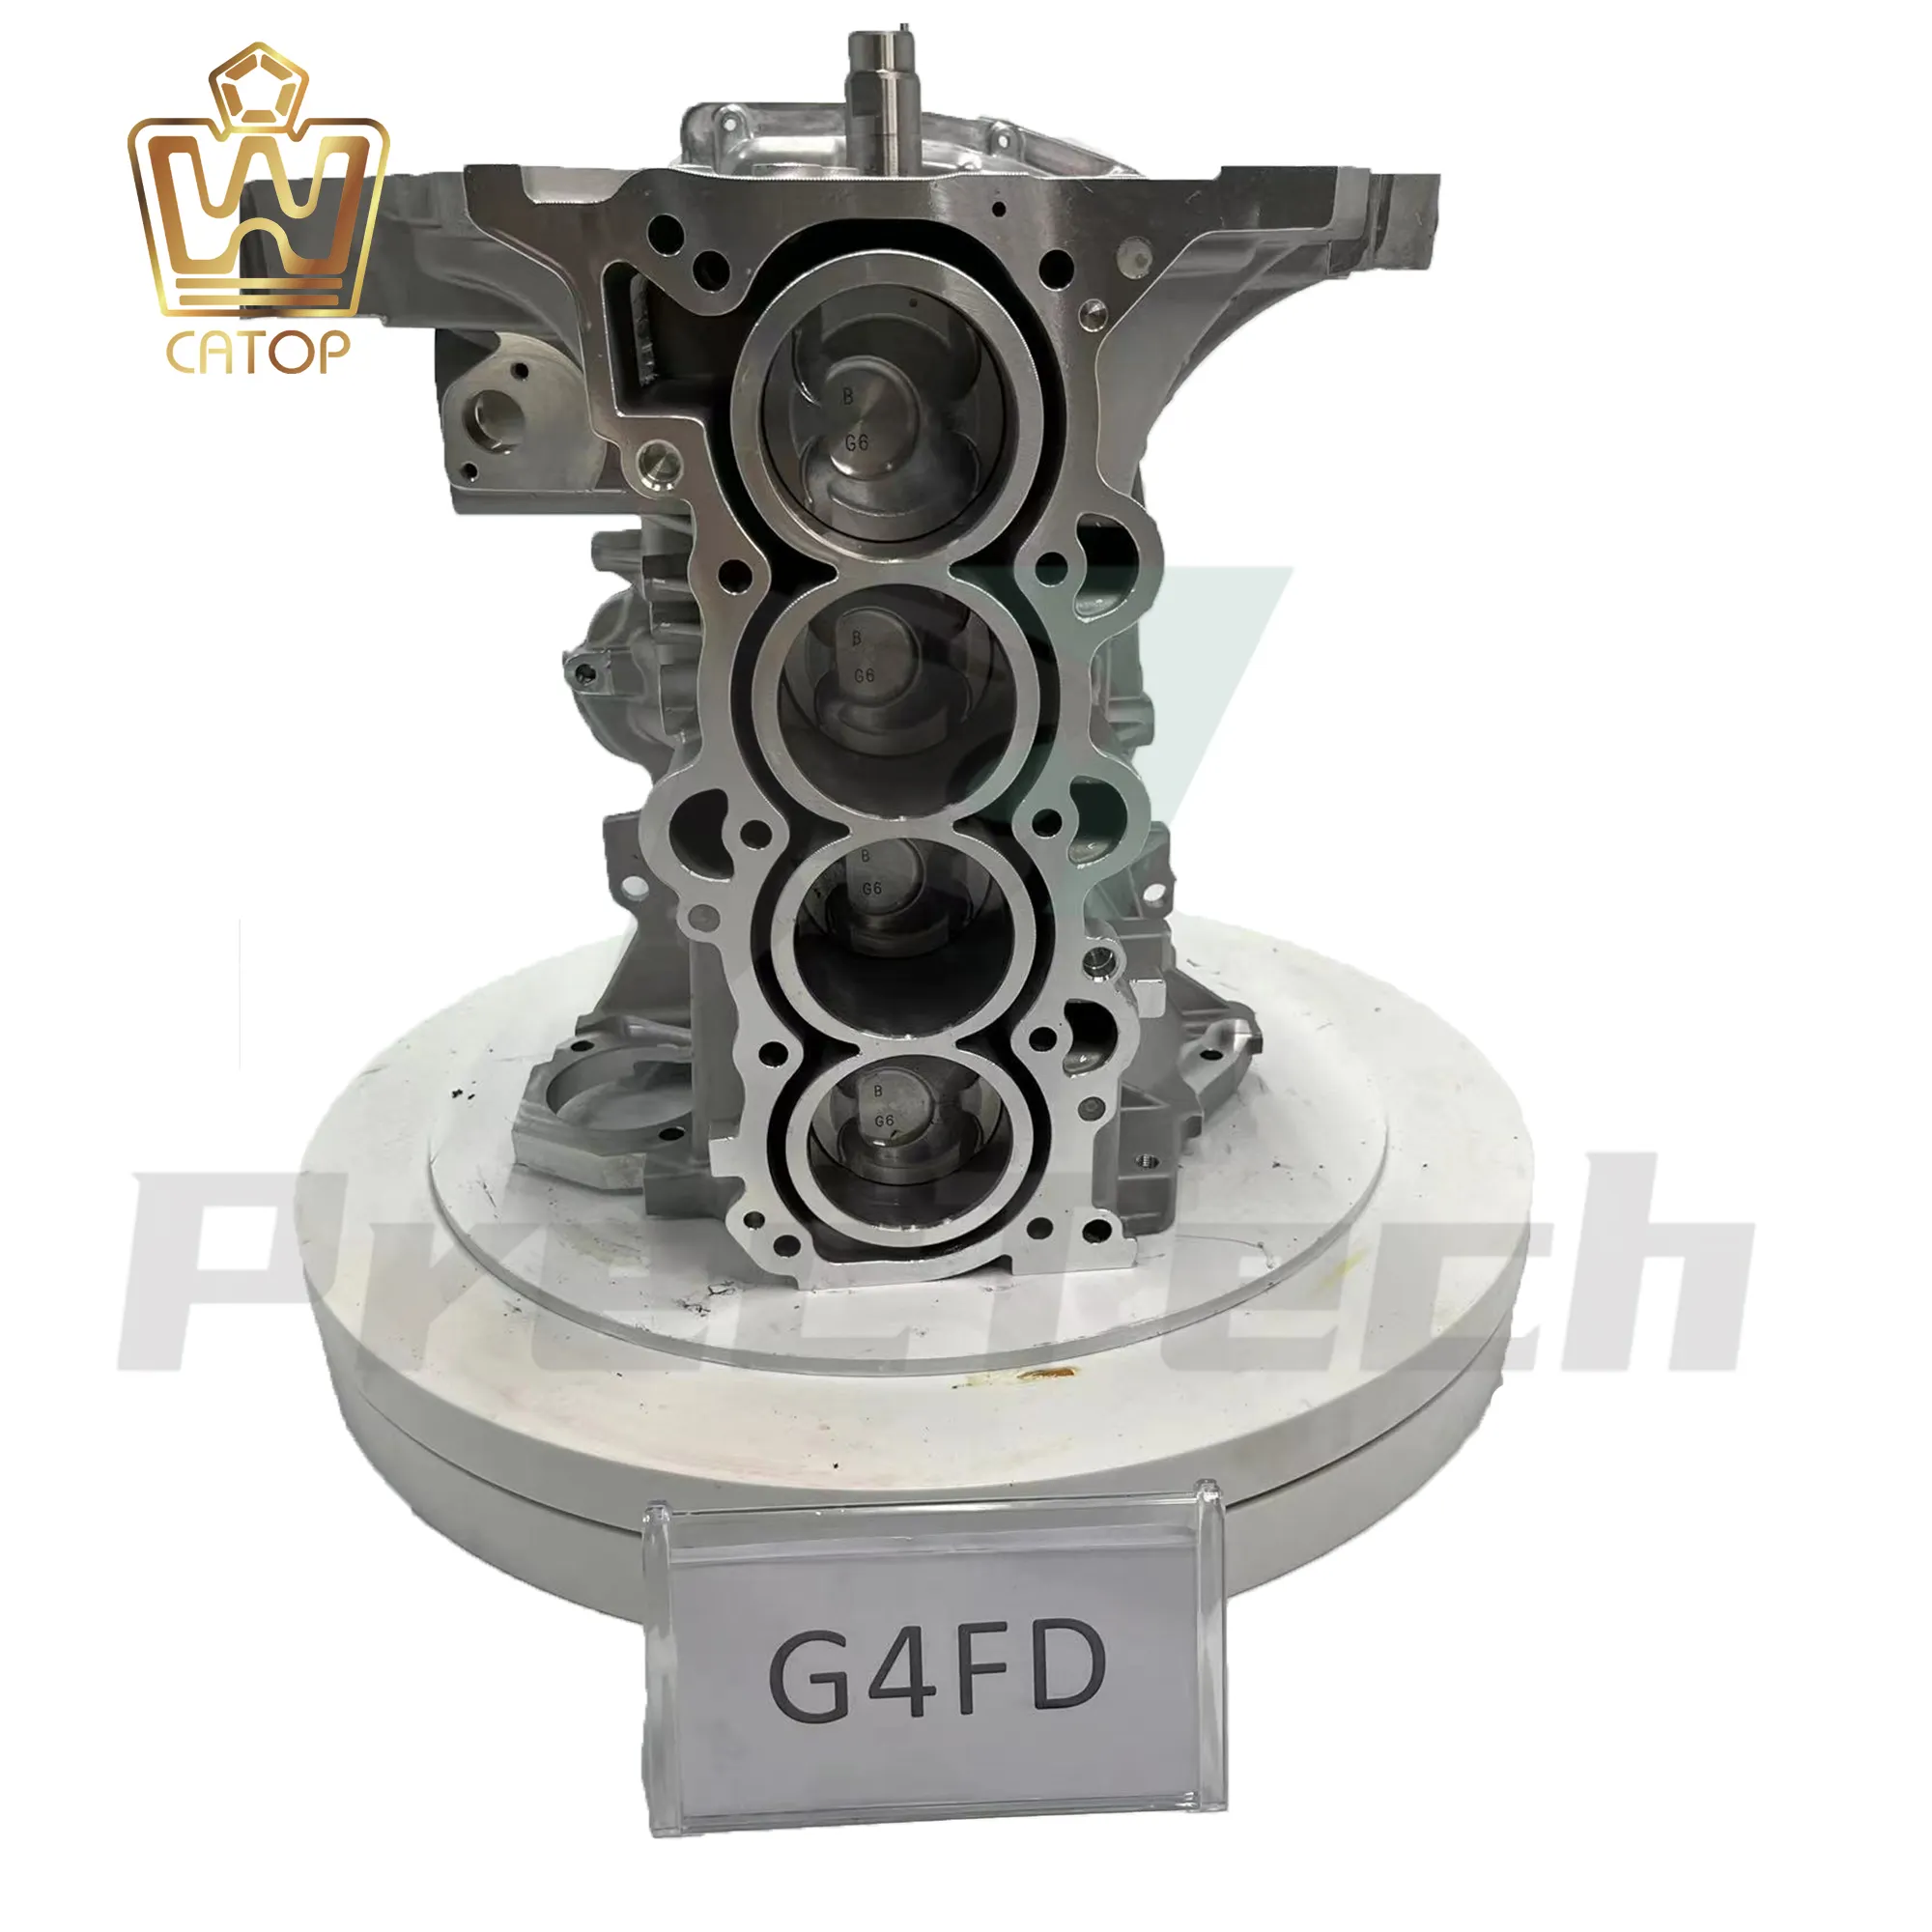 Piezas de automóvil de montaje de motor para Hyundai Kia G4FD 1.6L bloque corto de motor de gasolina para Veloster Ceed Soul Rio